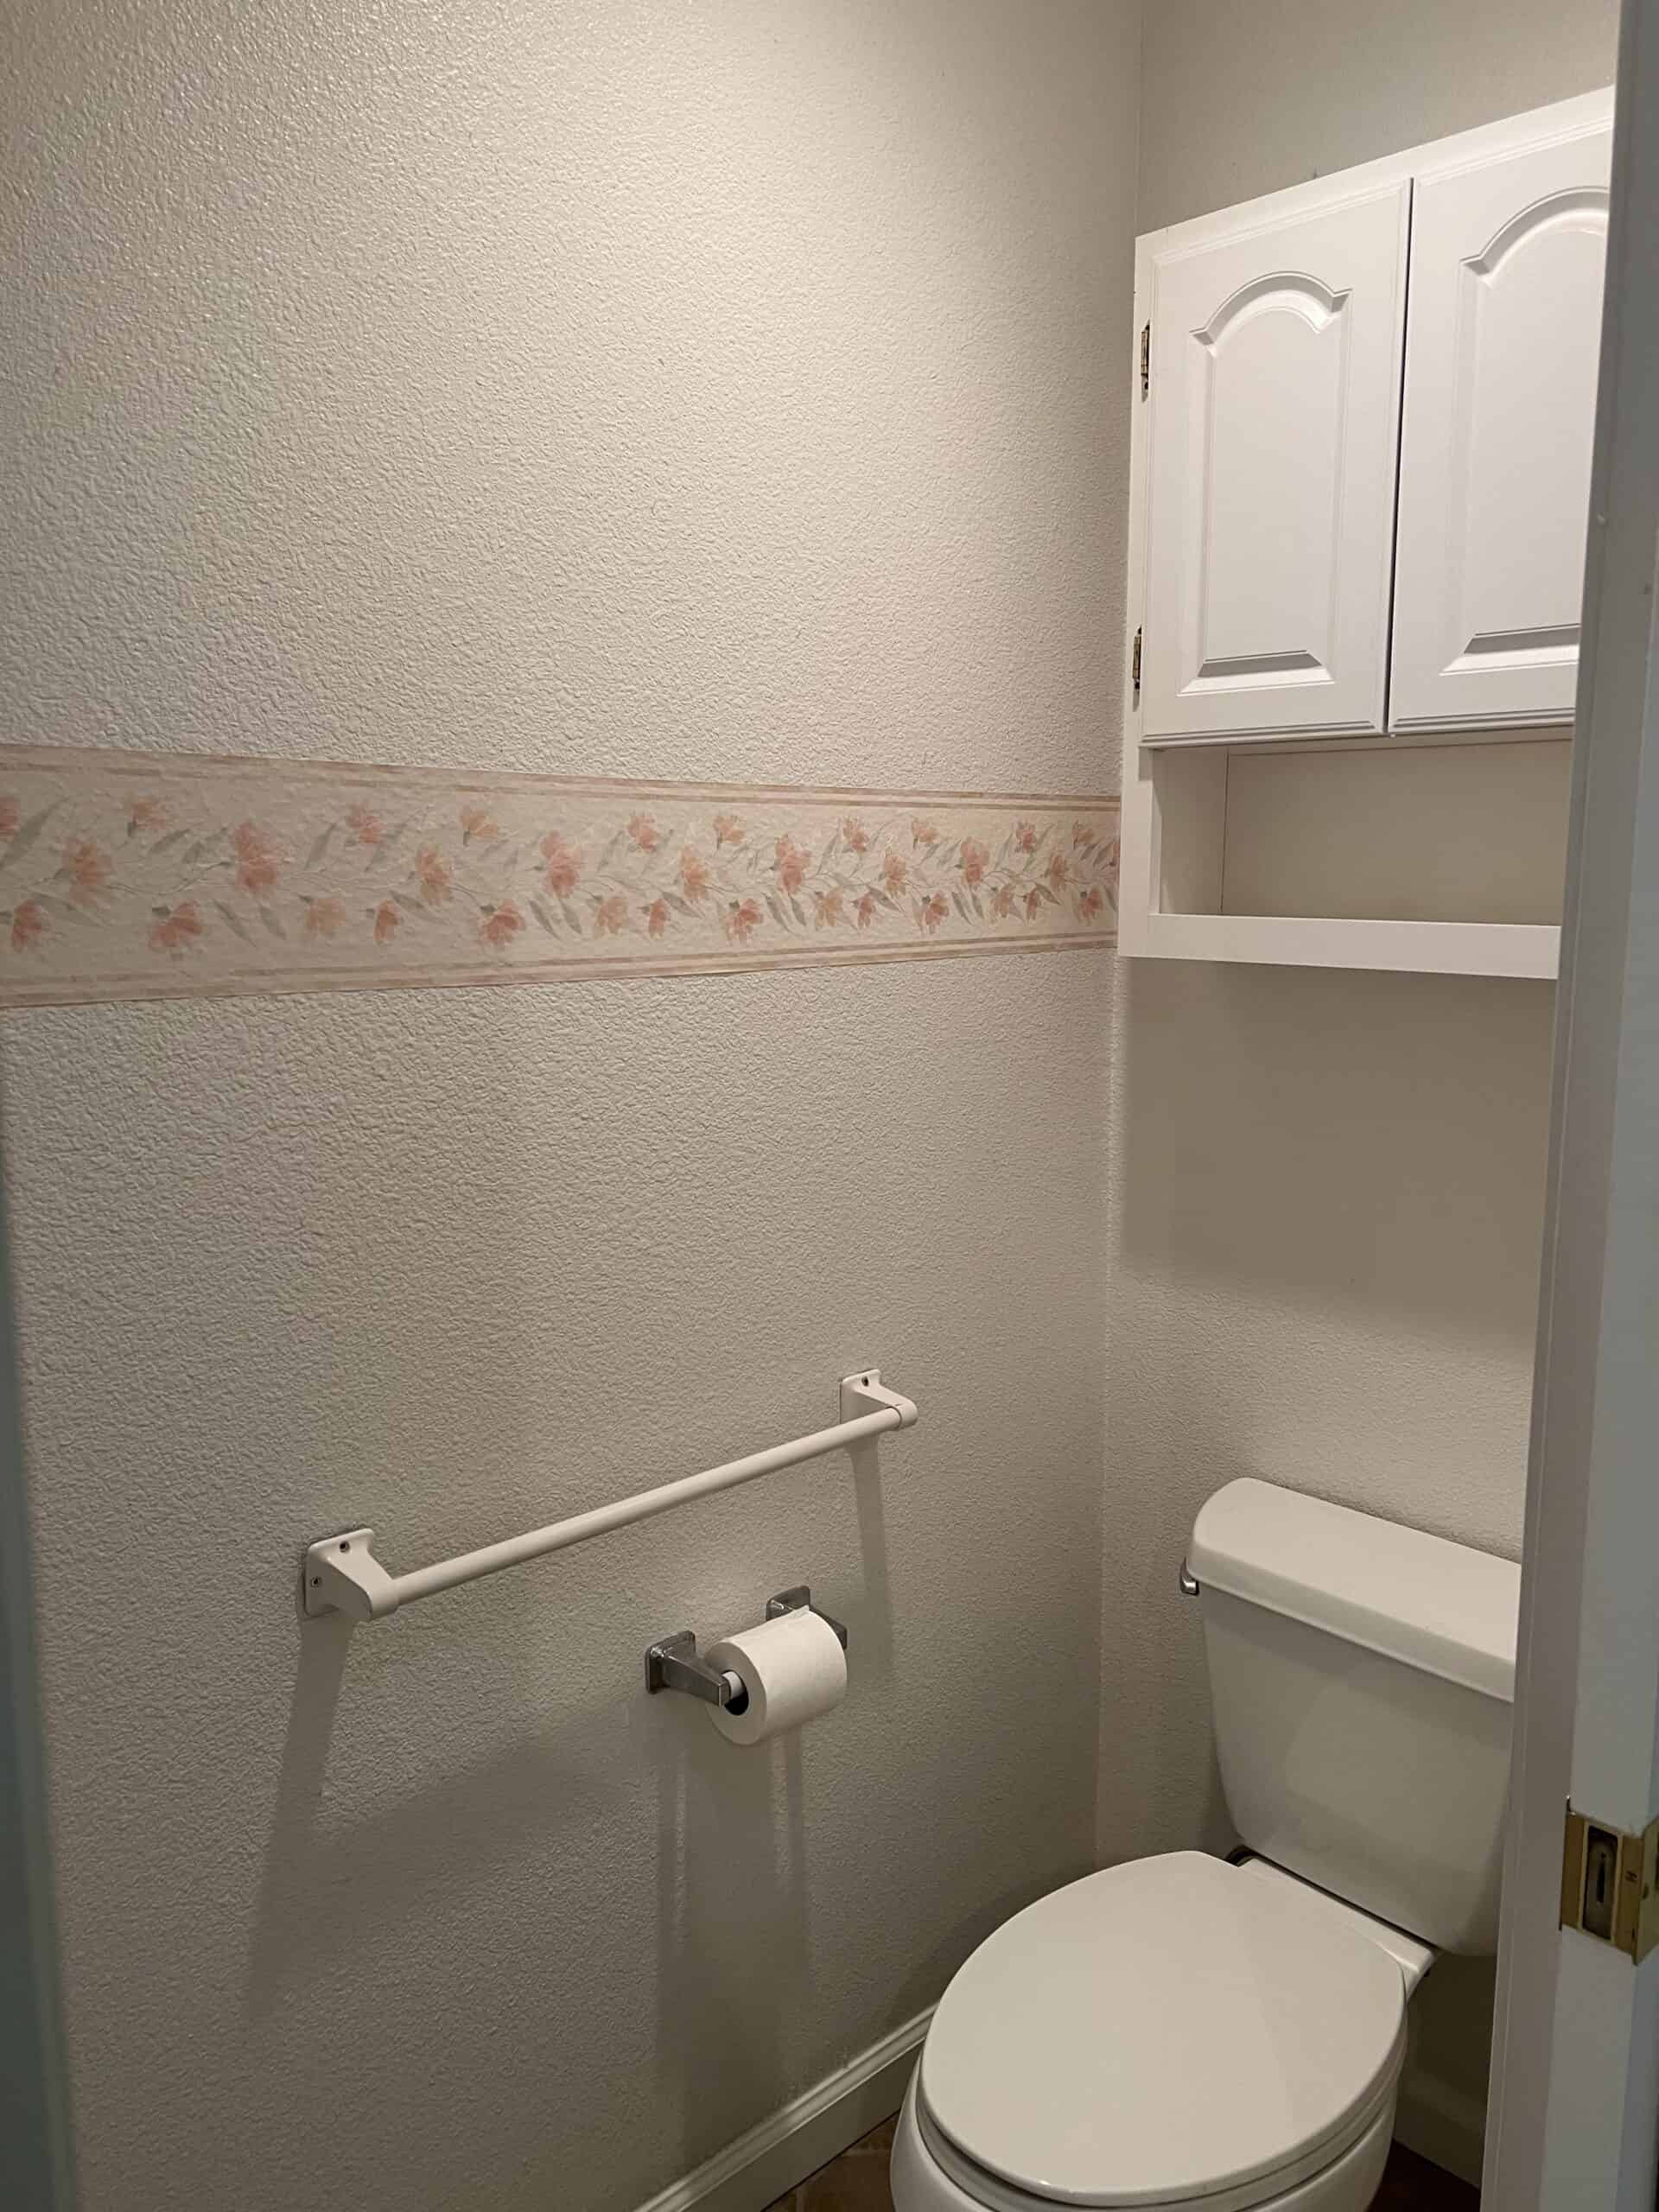 Master Bathroom Toilet Room